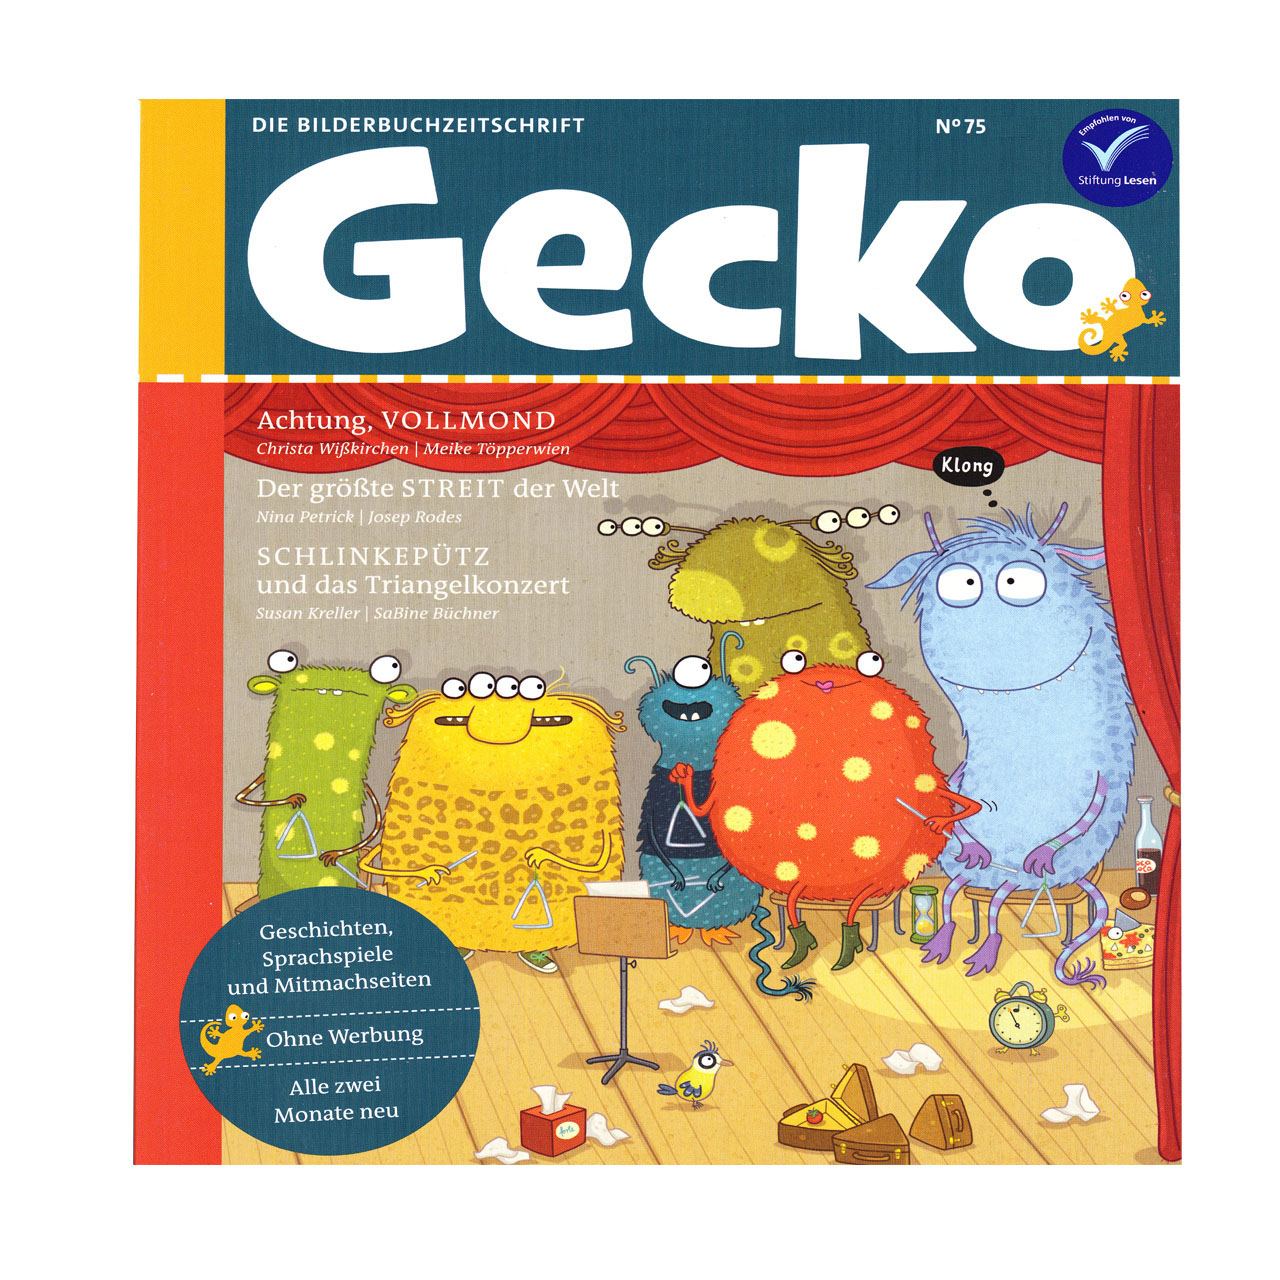 مجله Gecko ژانویه 2020